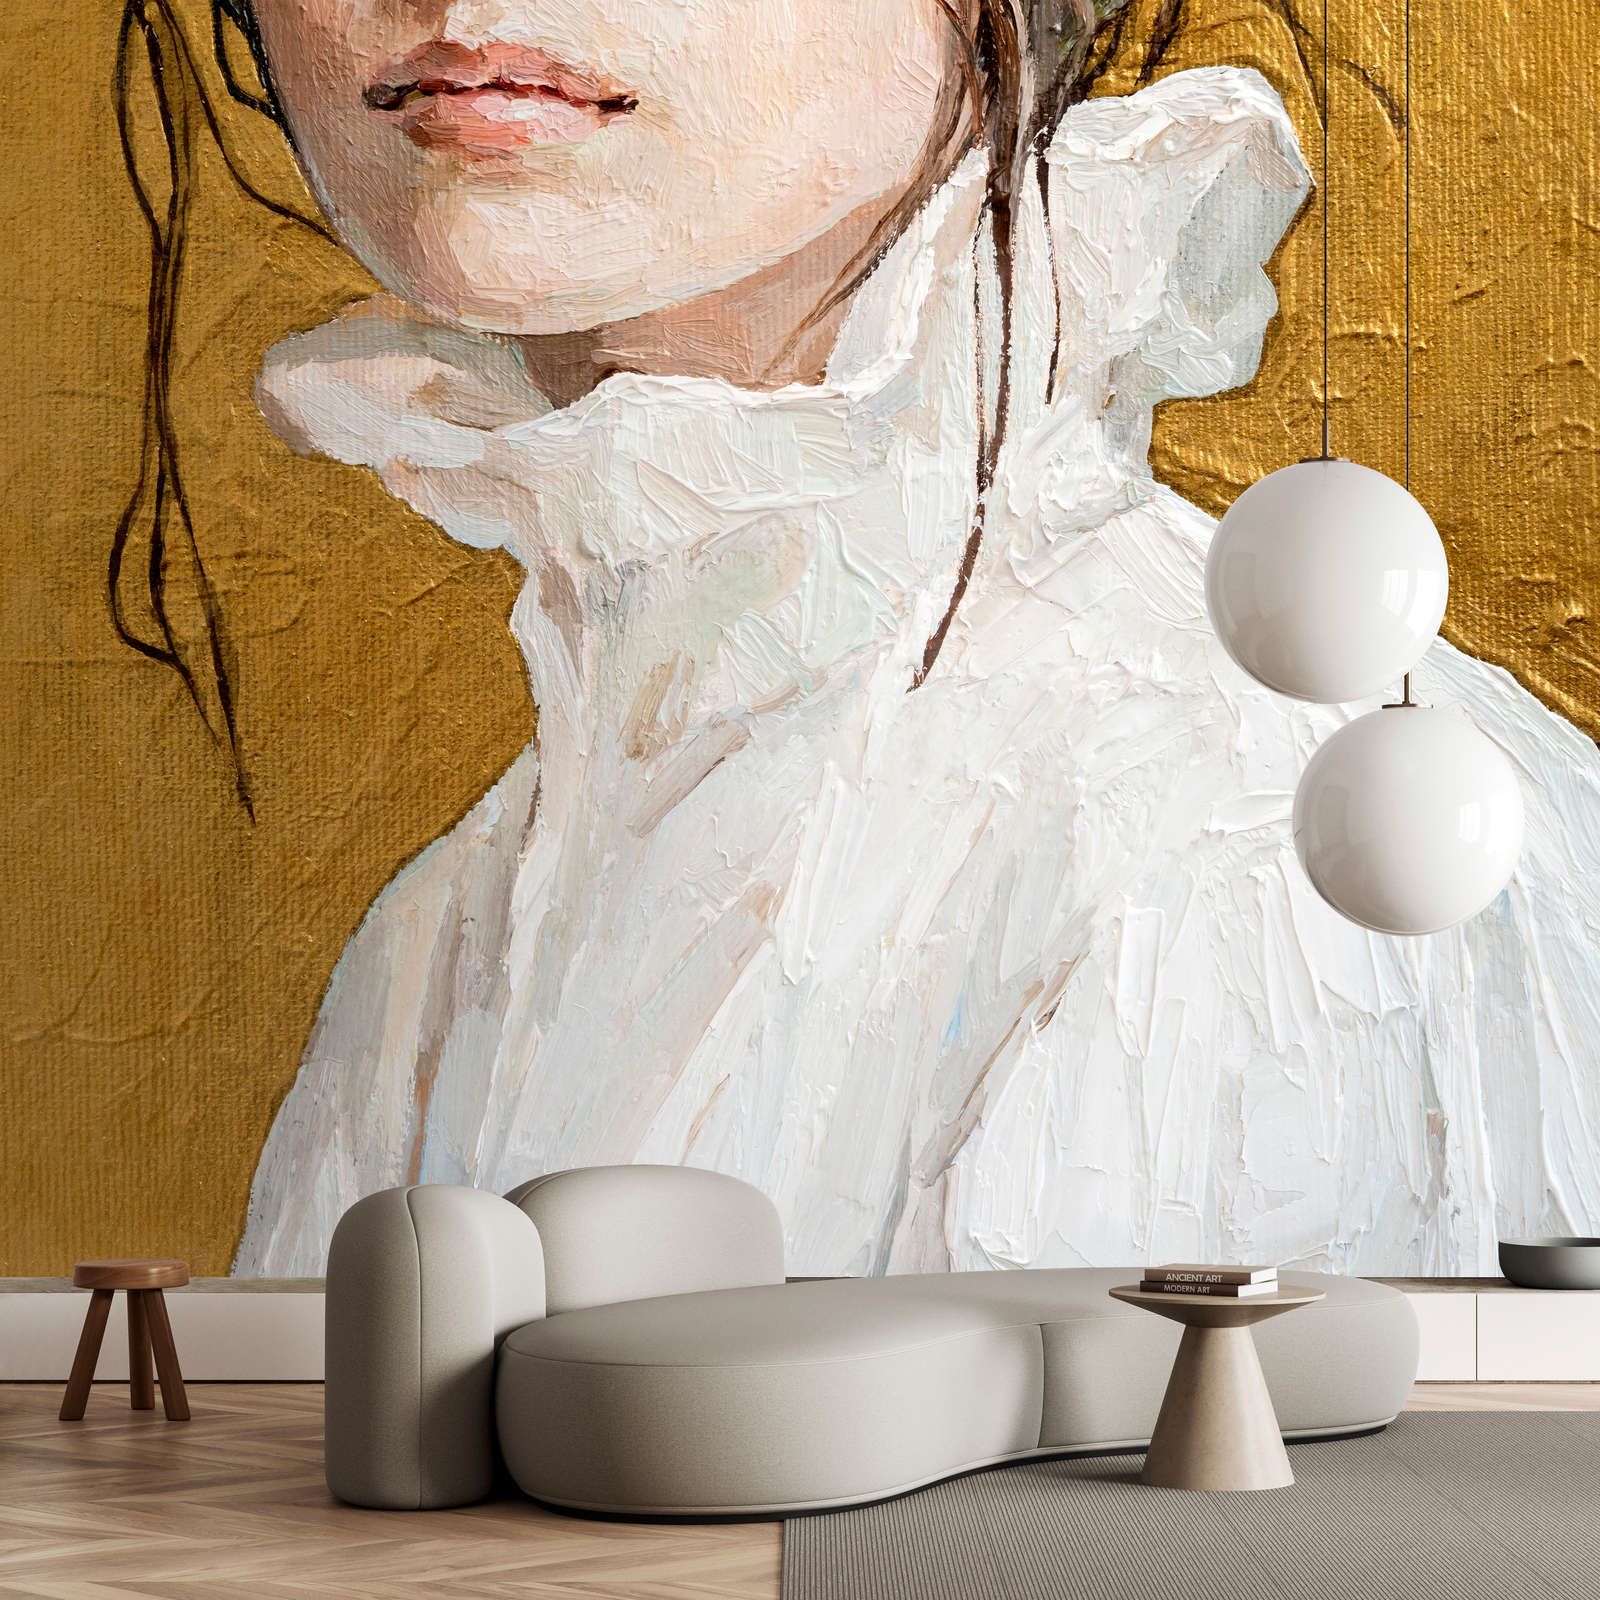             Fotomural »golda« - retrato parcial de una mujer - obra de arte con estructura de lino | Tela no tejida lisa, ligeramente nacarada y brillante
        